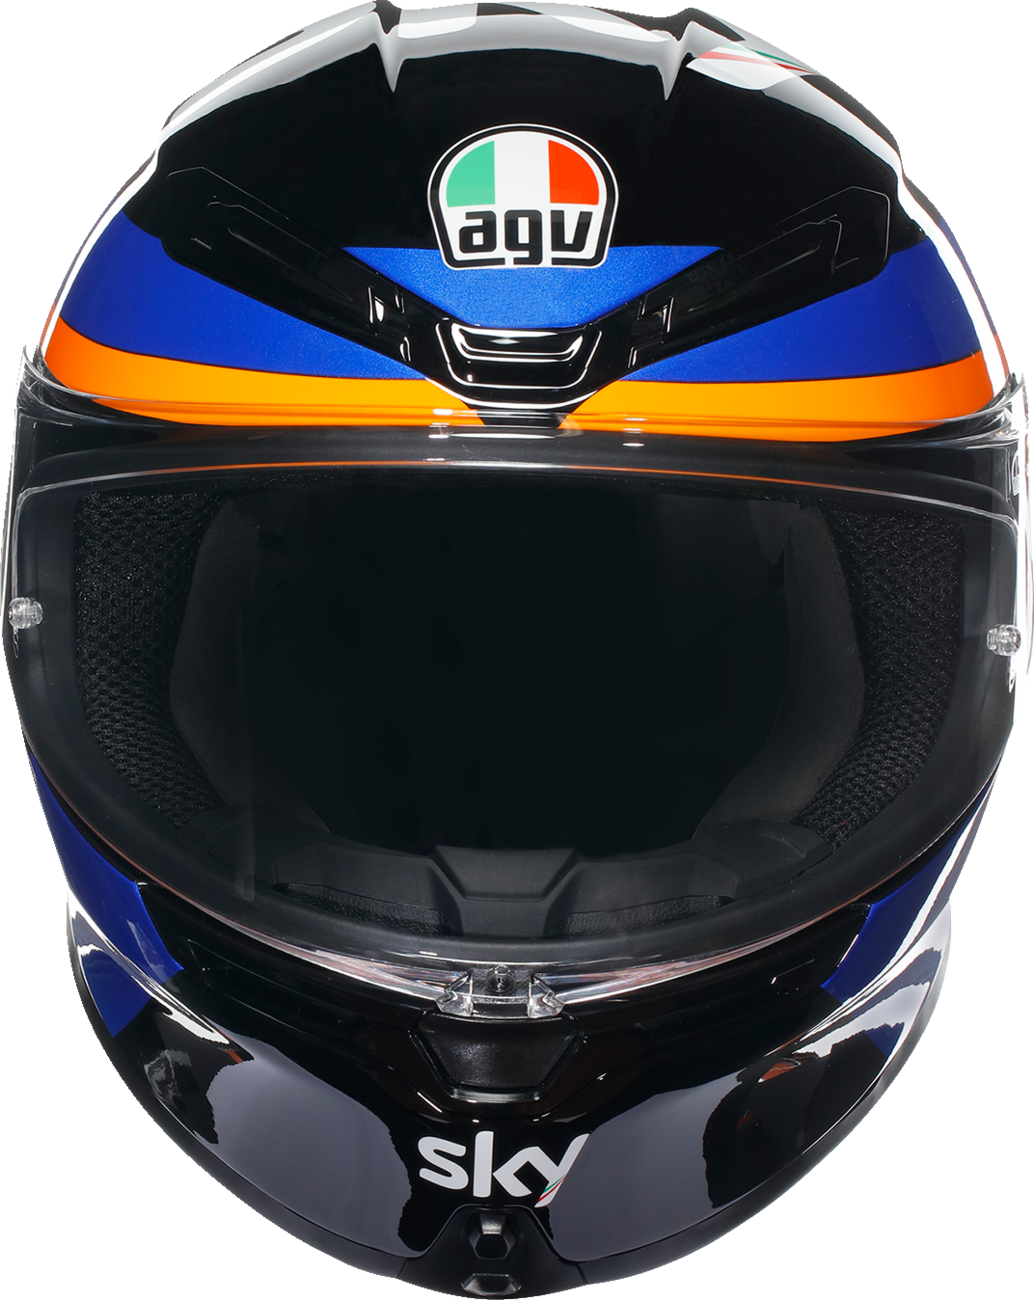 AGV K6 S Helmet - Marini Sky Racing Team 2021 - Small 2118395002002S